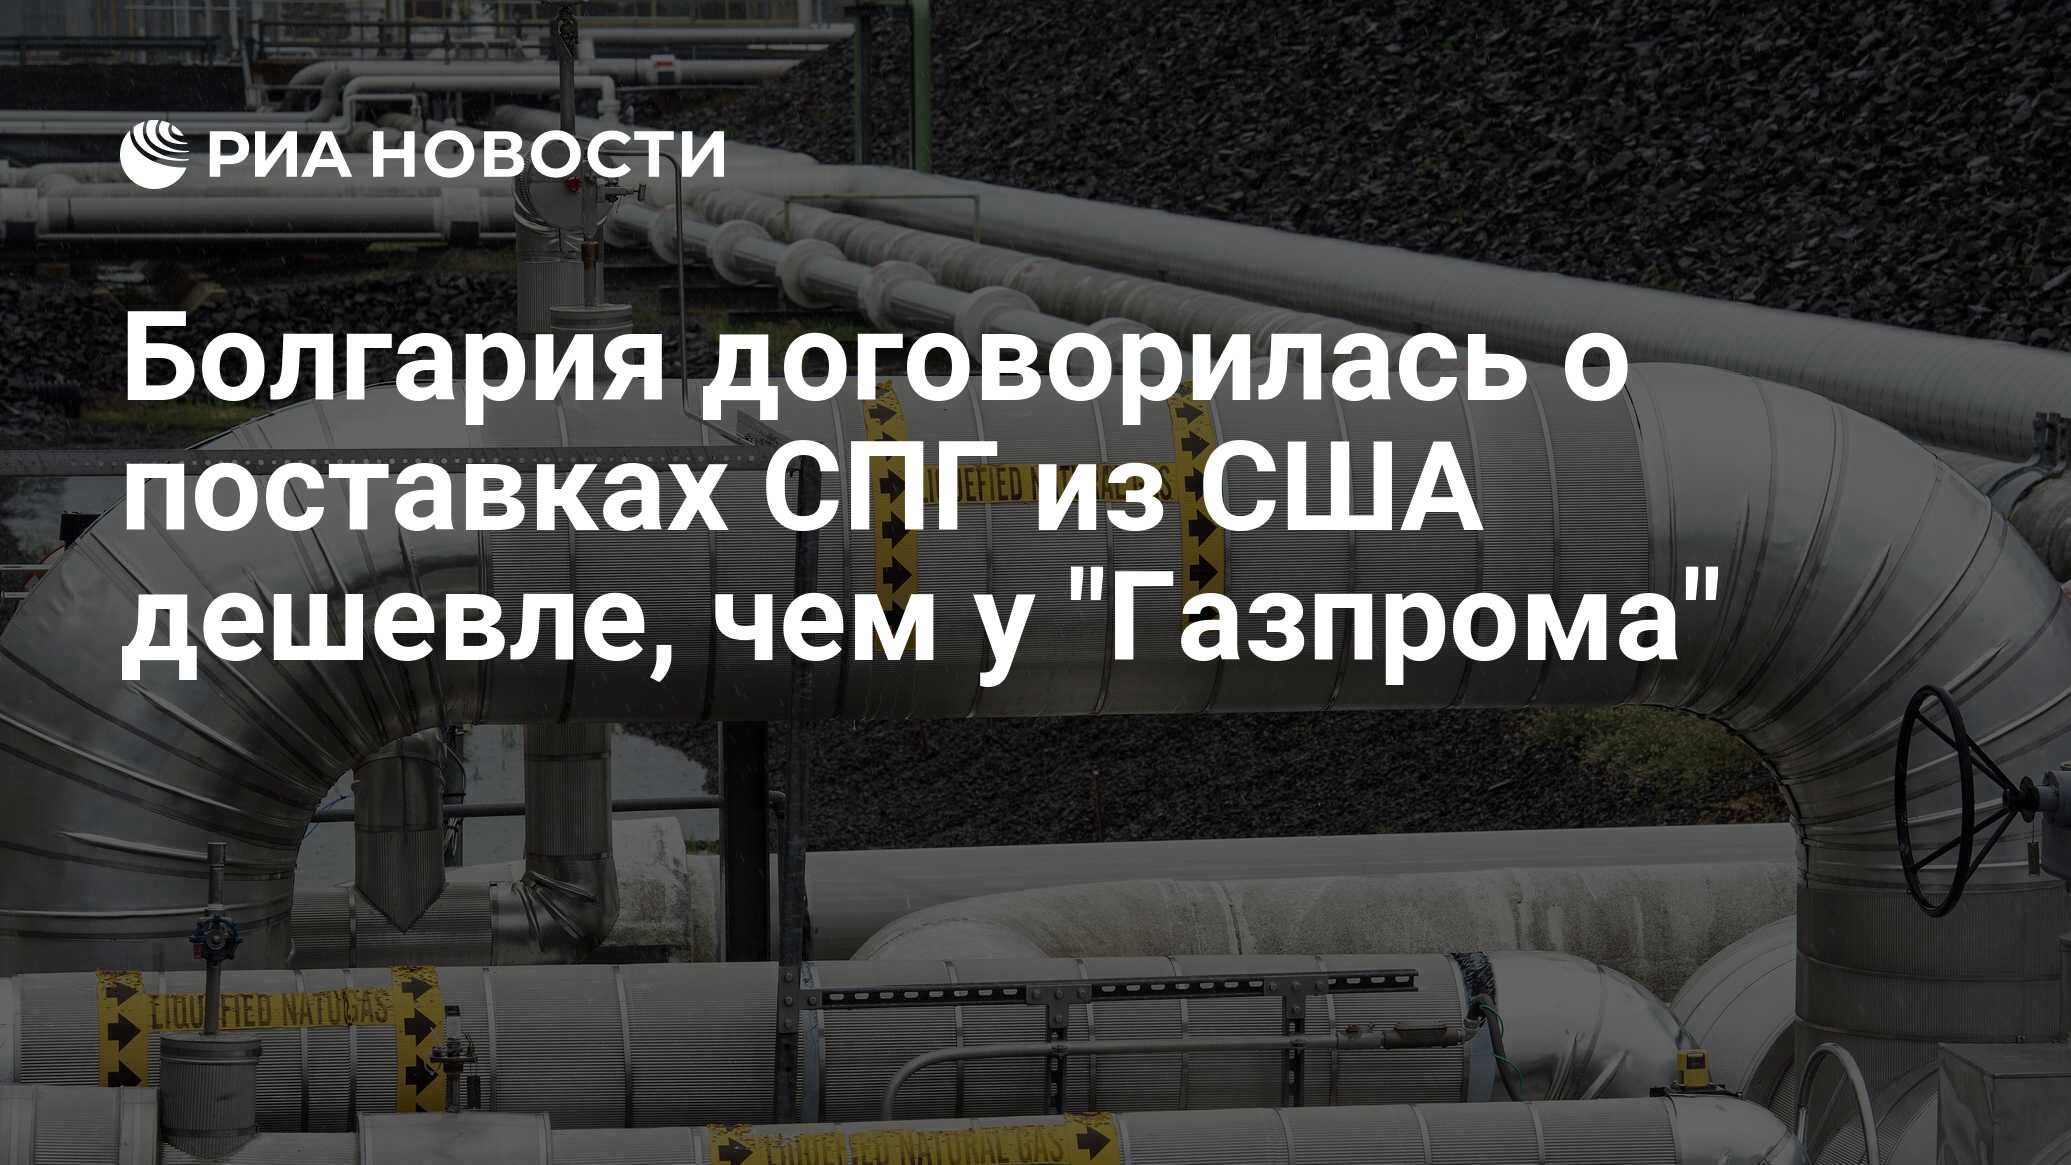 Болгария договорилась о поставках СПГ из США дешевле, чем у "Газпрома" - РИА Новости, 11.05.2022